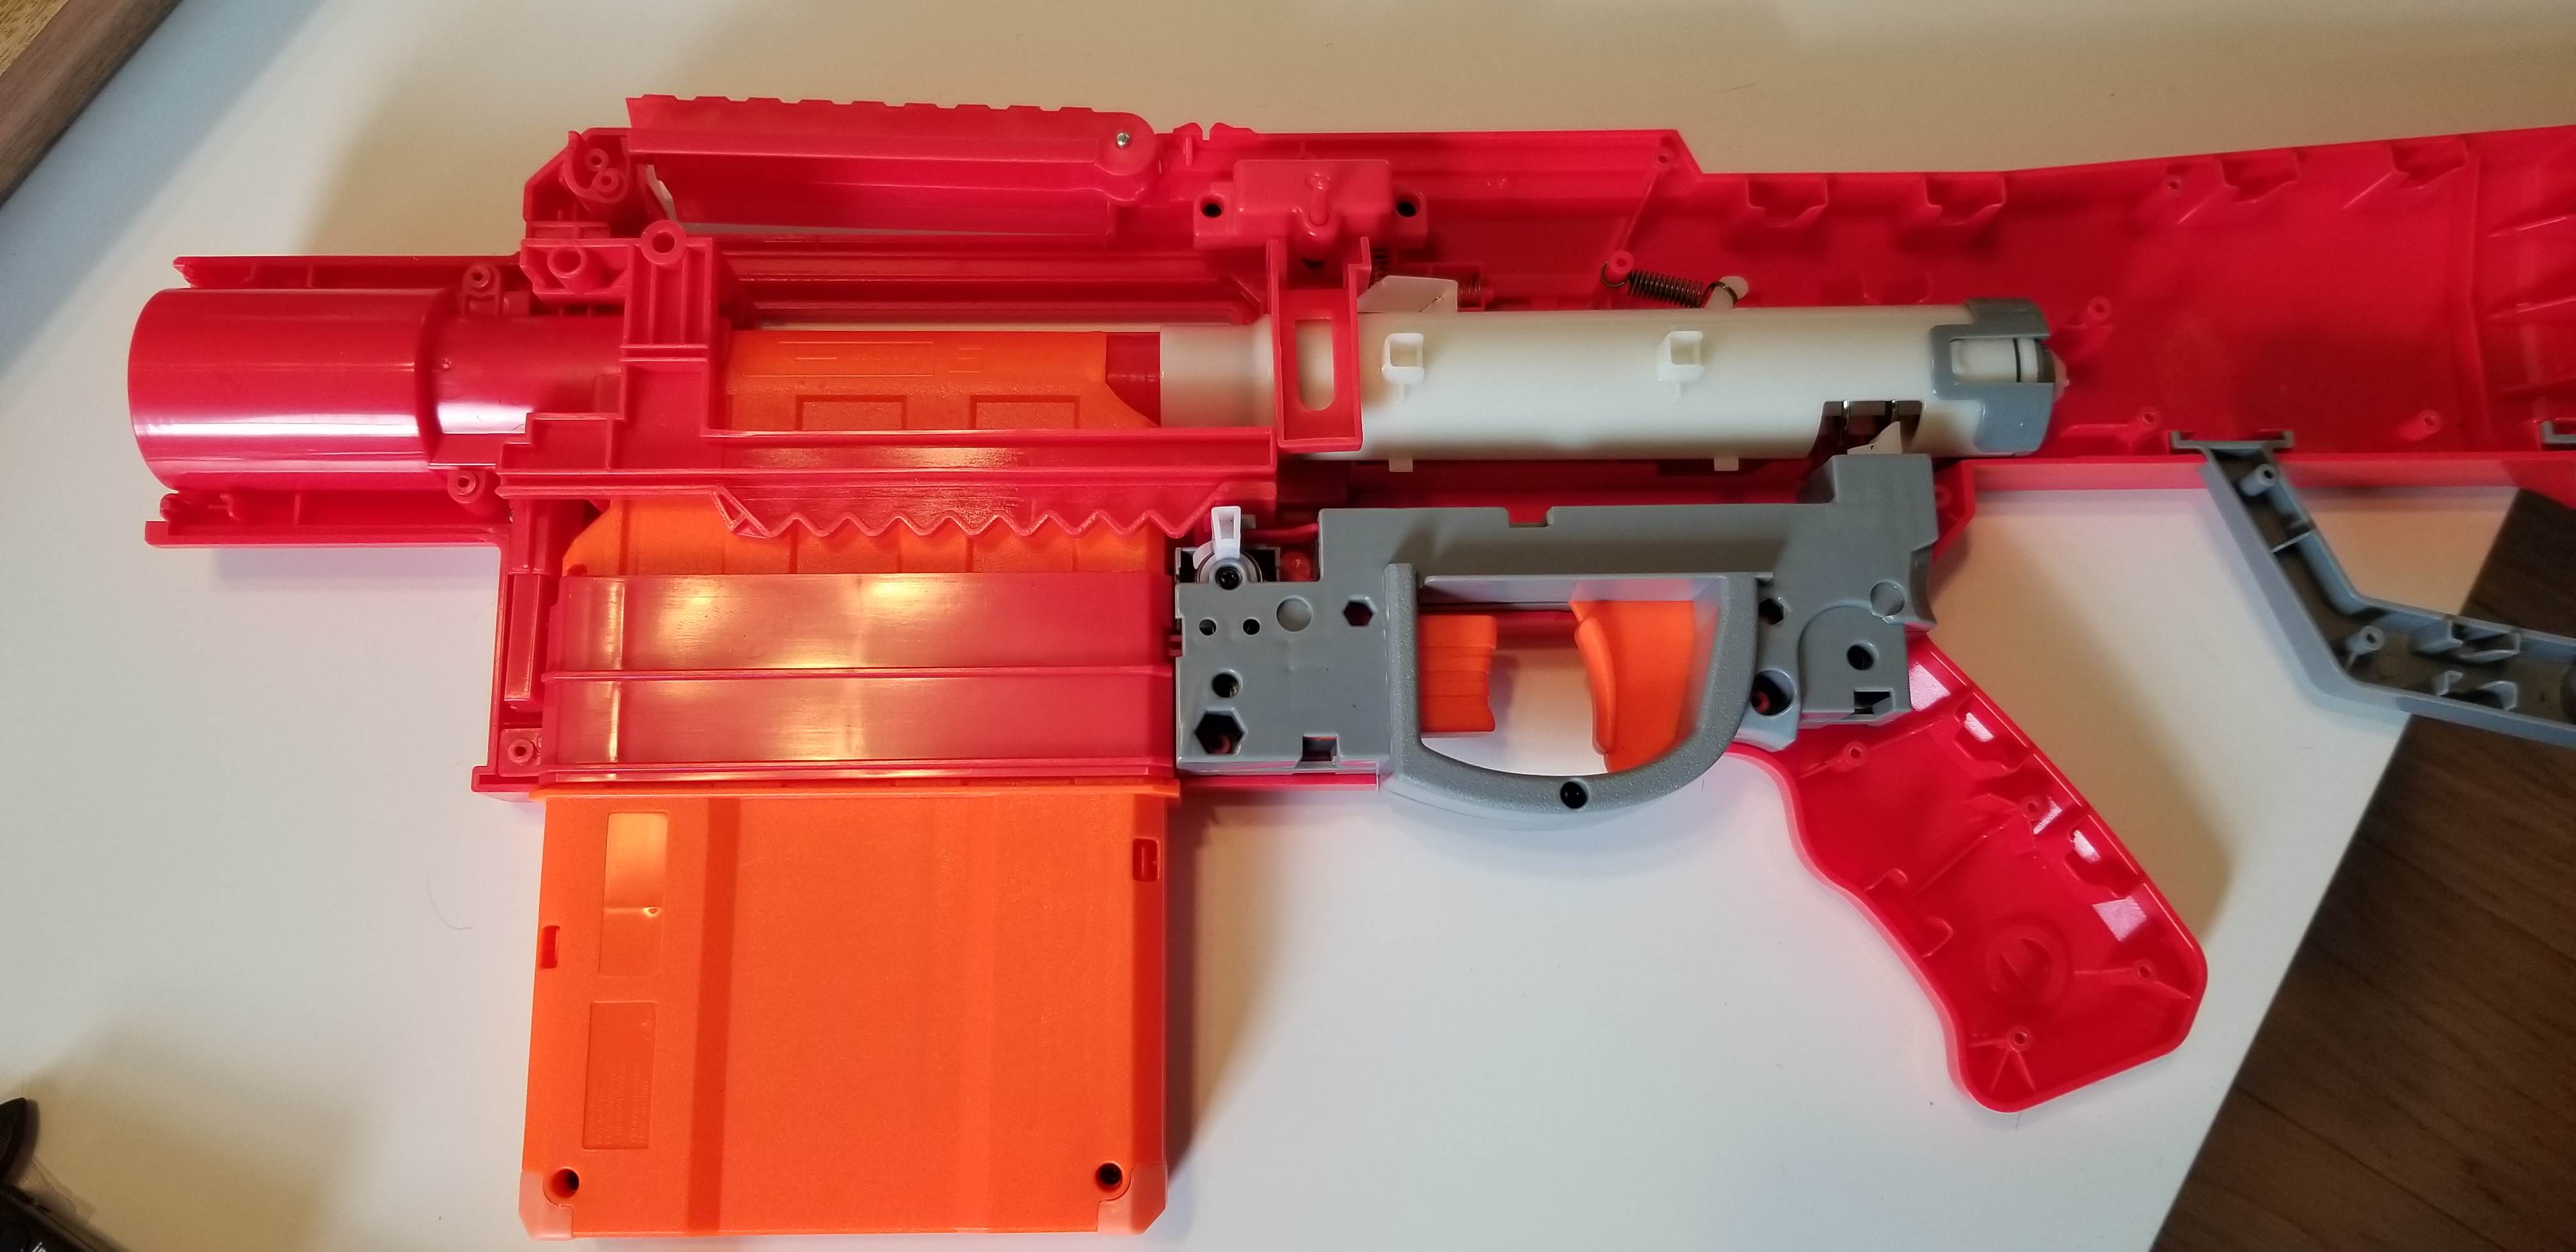 heavy sr nerf gun  Nerf Fortnite Heavy SR Blaster, Longest Nerf